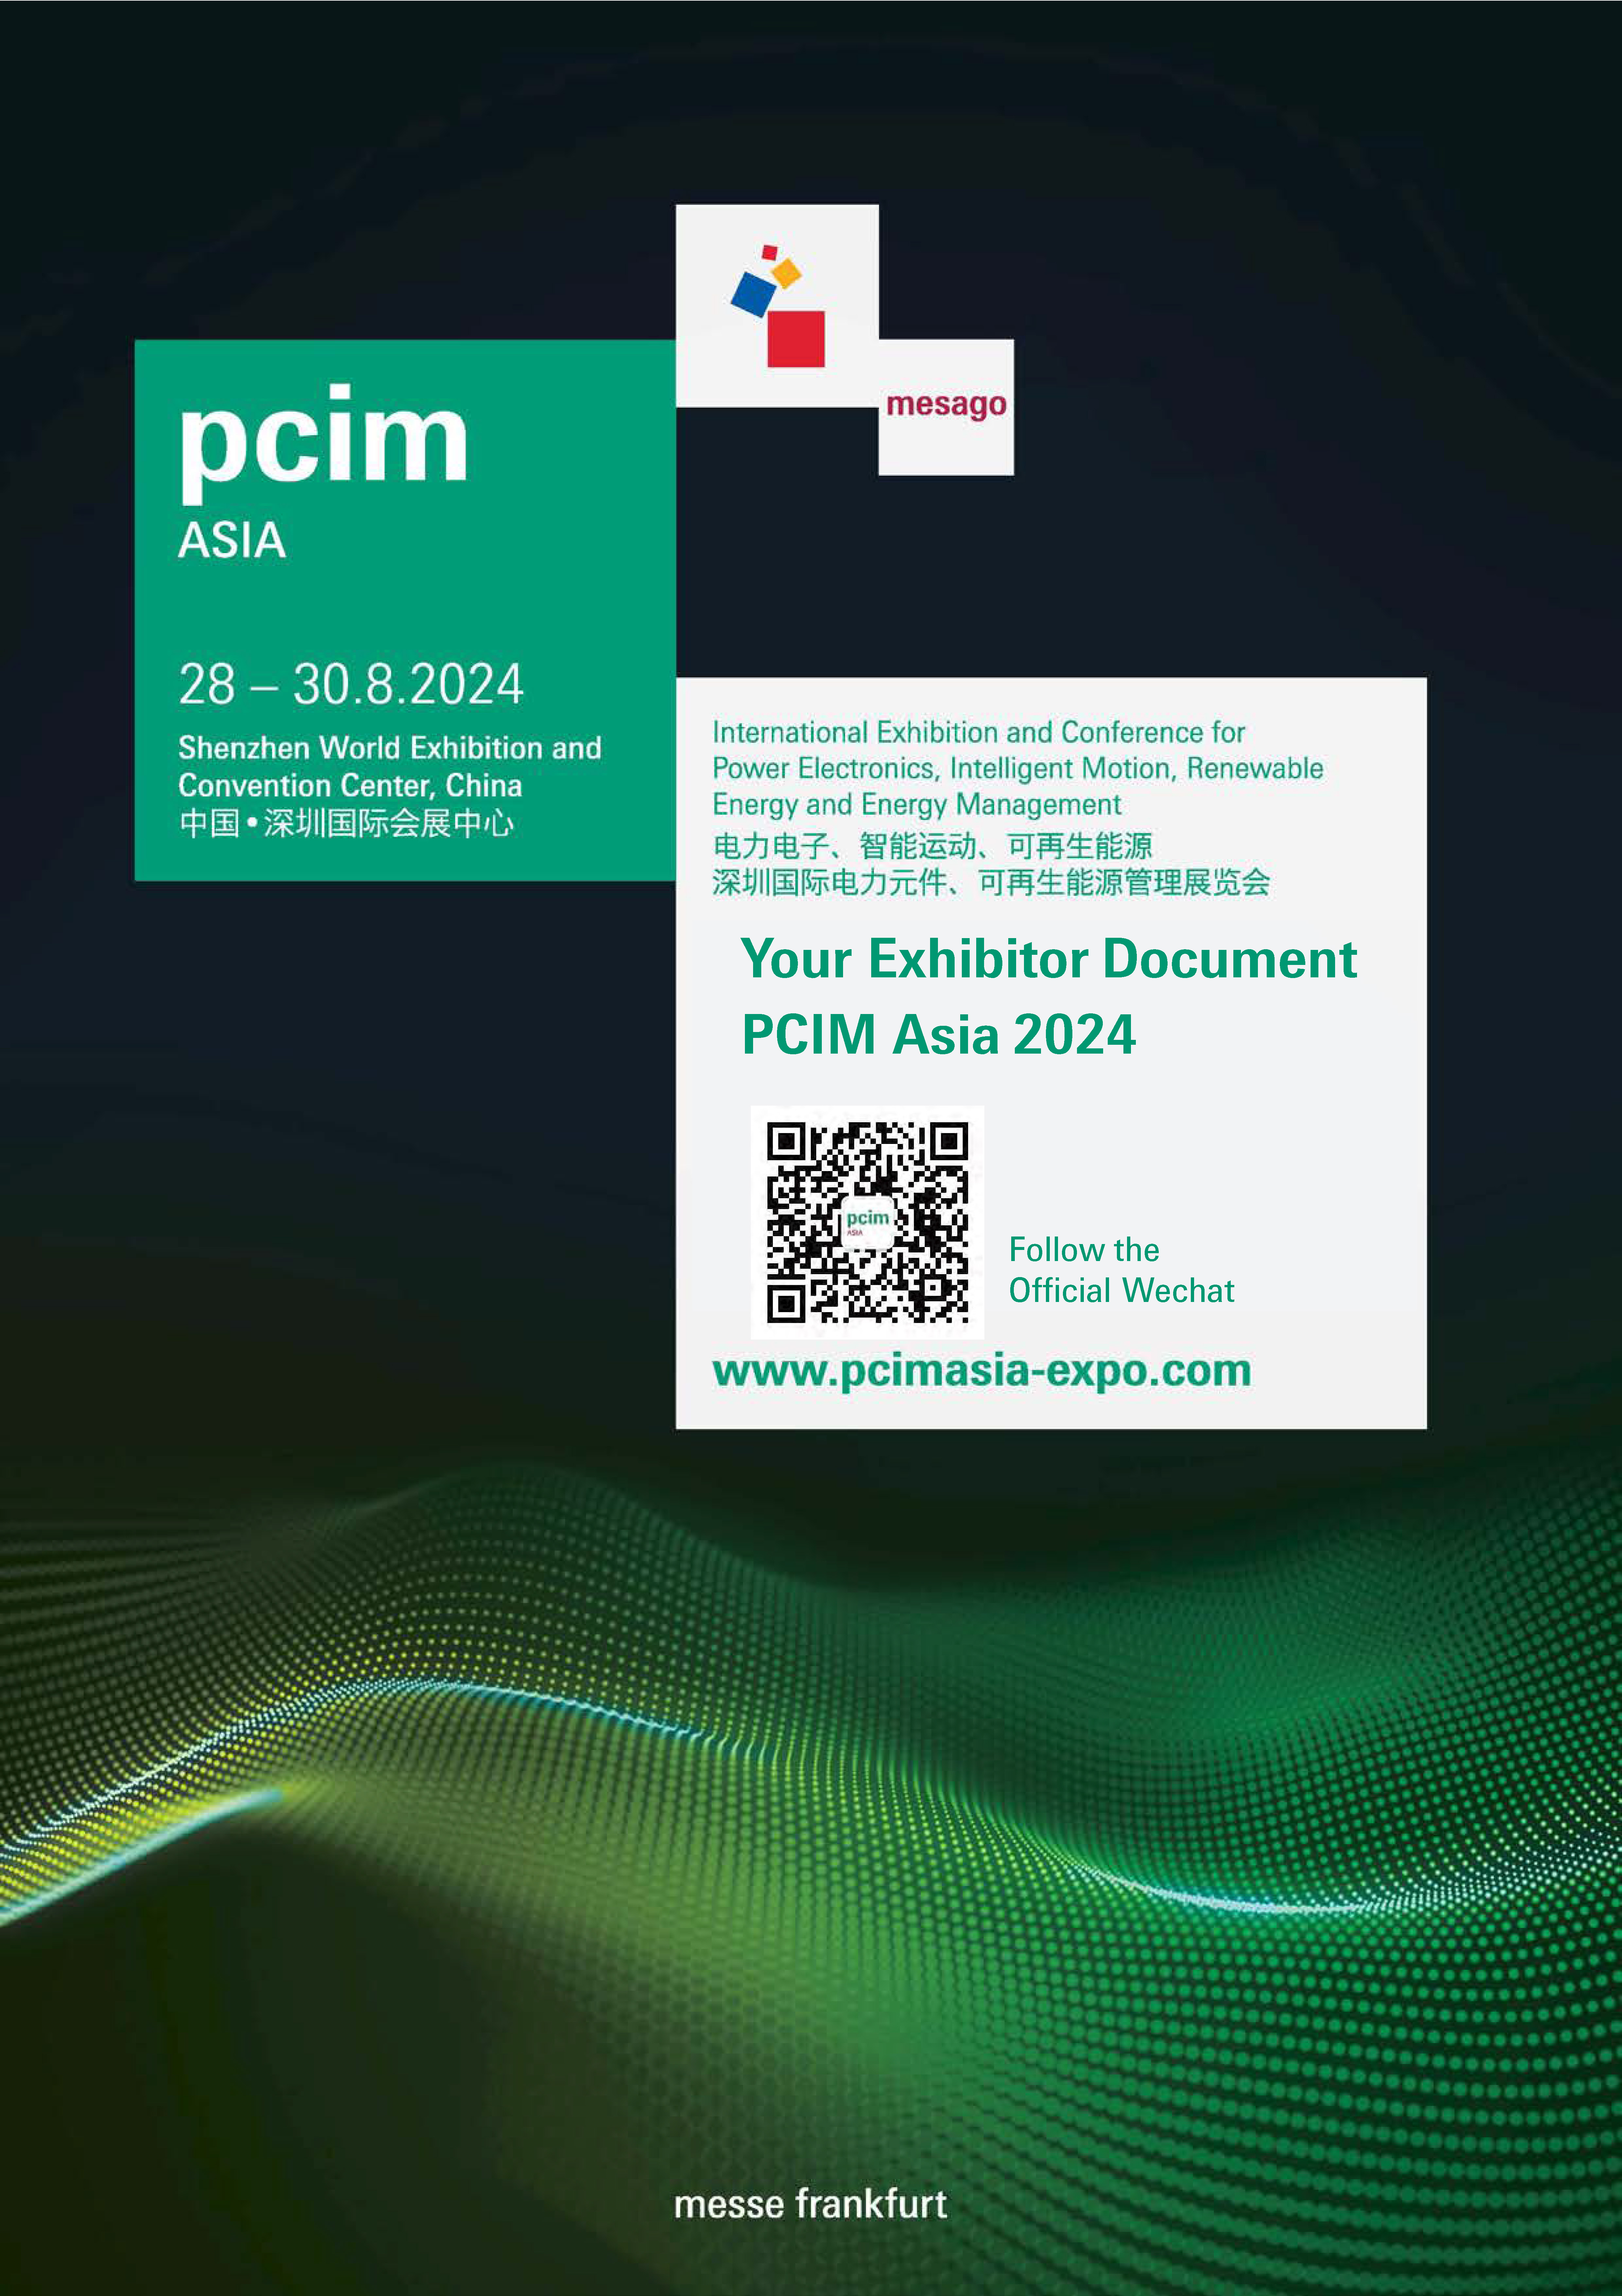 PCIM Asia 2024 Exhibitor Document 1